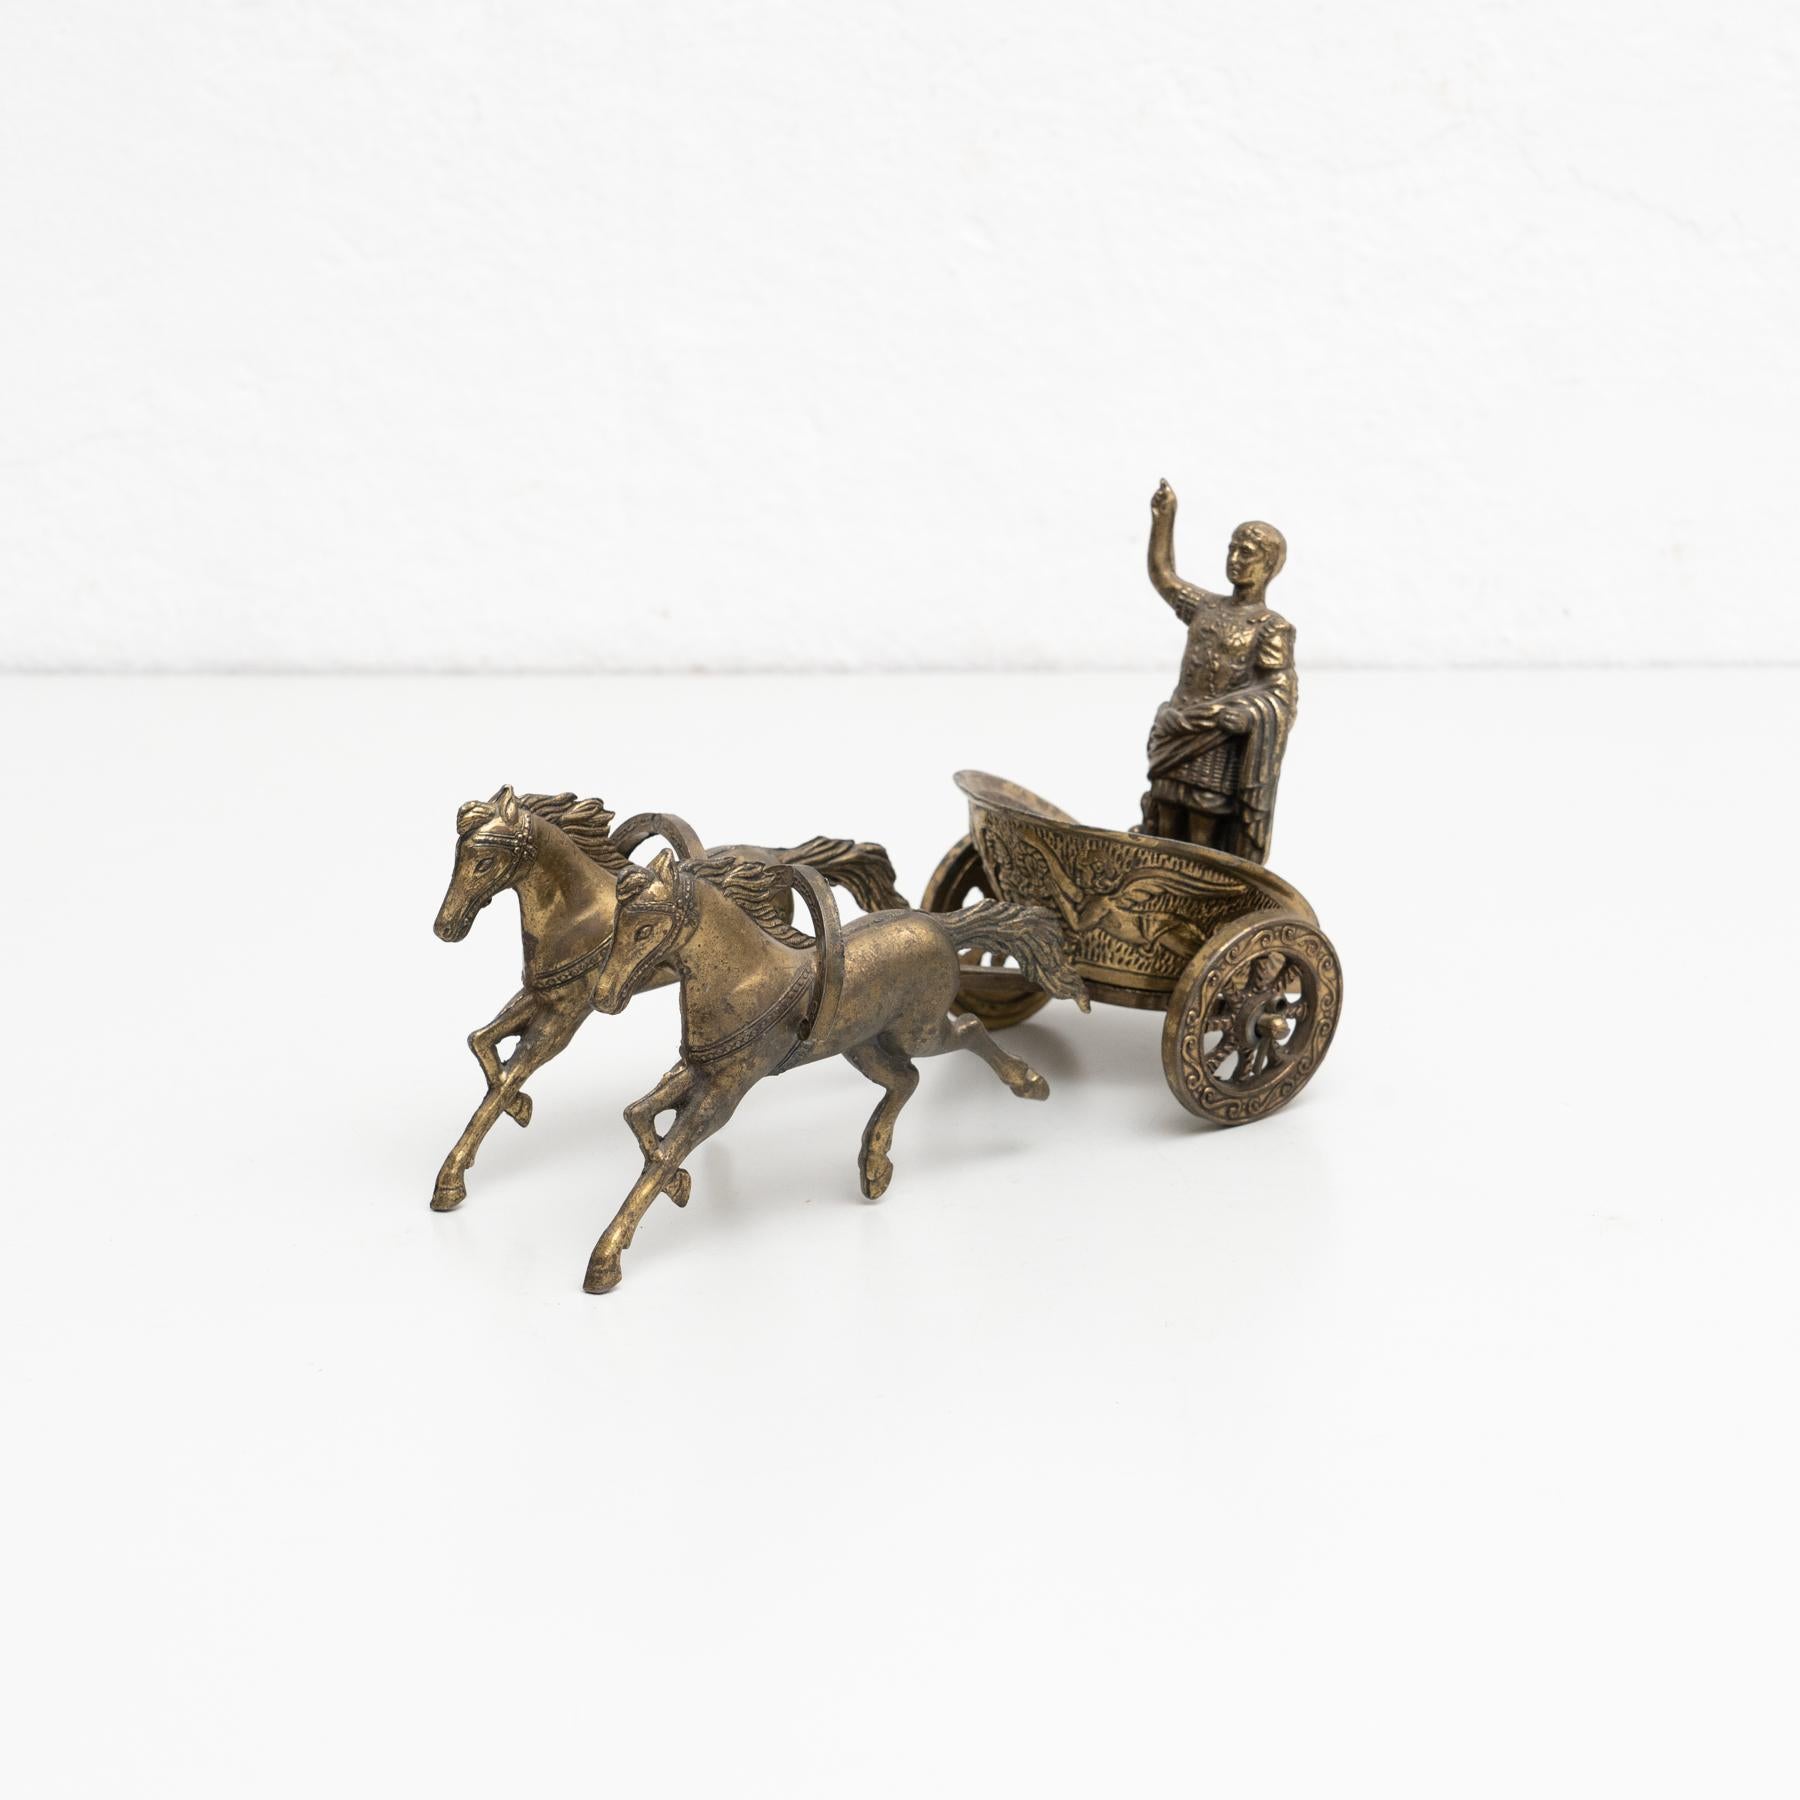 Vintage-Metallfigur der traditionellen römischen Chariot im Vintage-Stil mit einem gestempelten Olympischen Symbol.

Von einem unbekannten Hersteller in Spanien hergestellt, um 1950.

Originalzustand, alters- und gebrauchsbedingte